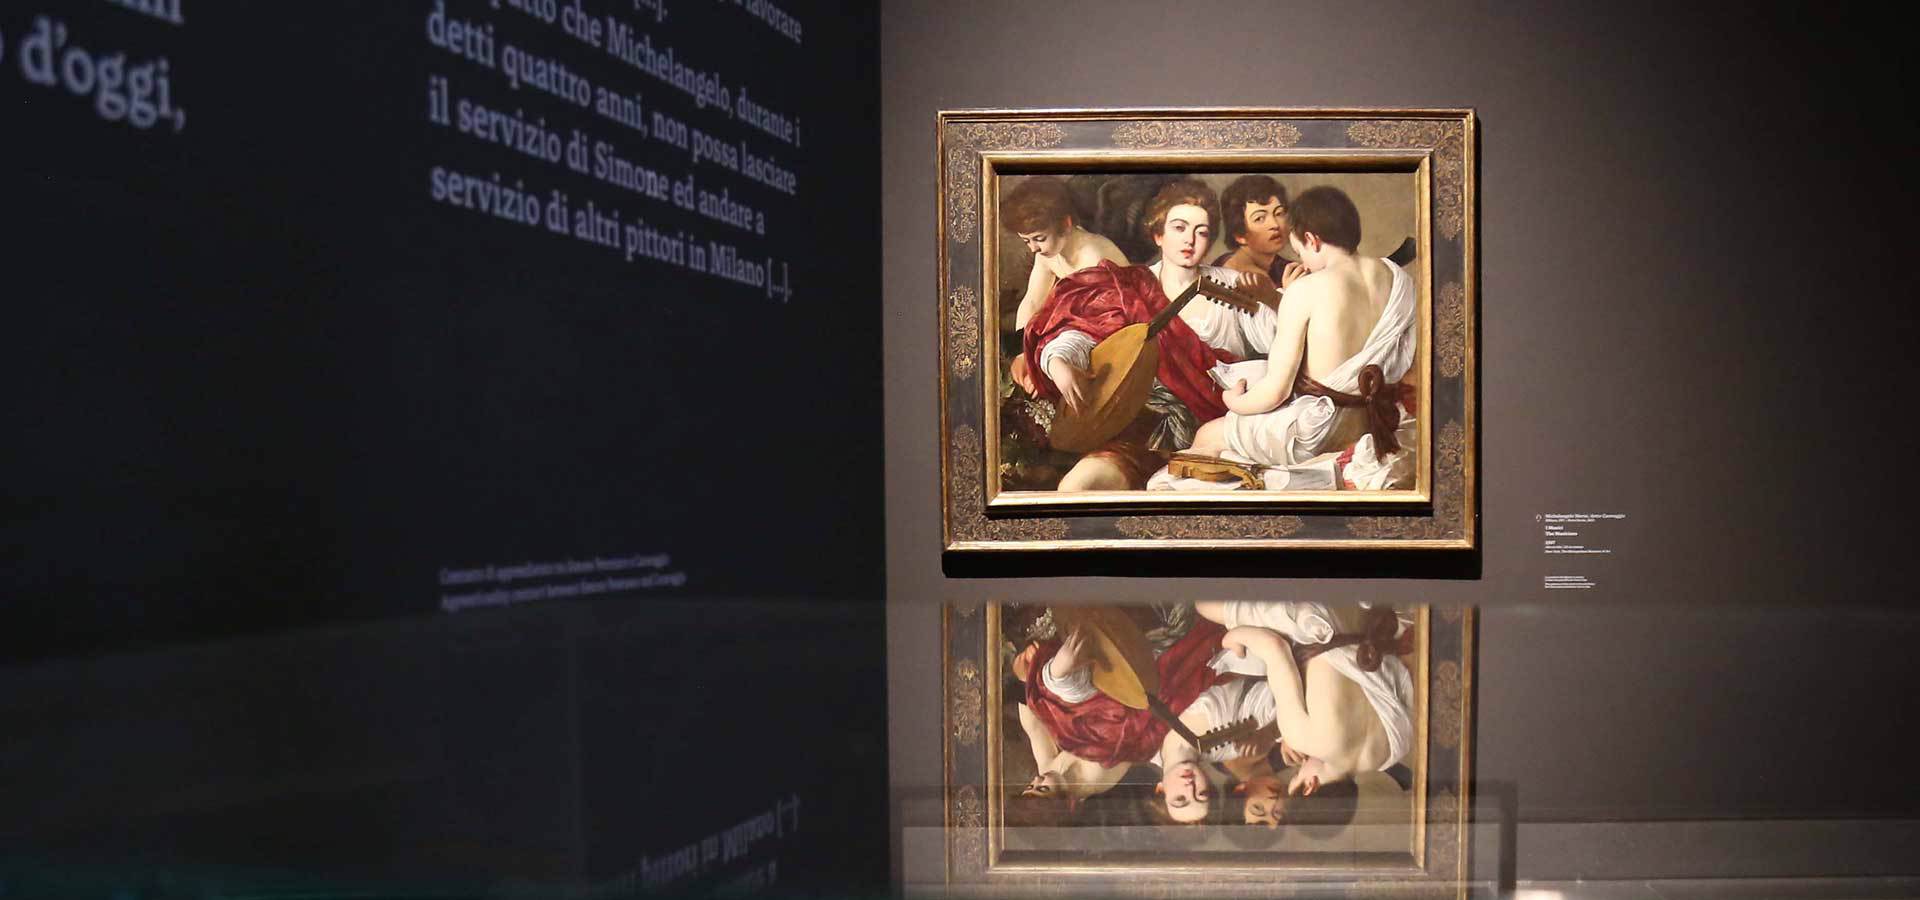 Accademia Carrara. Tiziano e Caravaggio in Peterzano. Foto: adicorbetta.